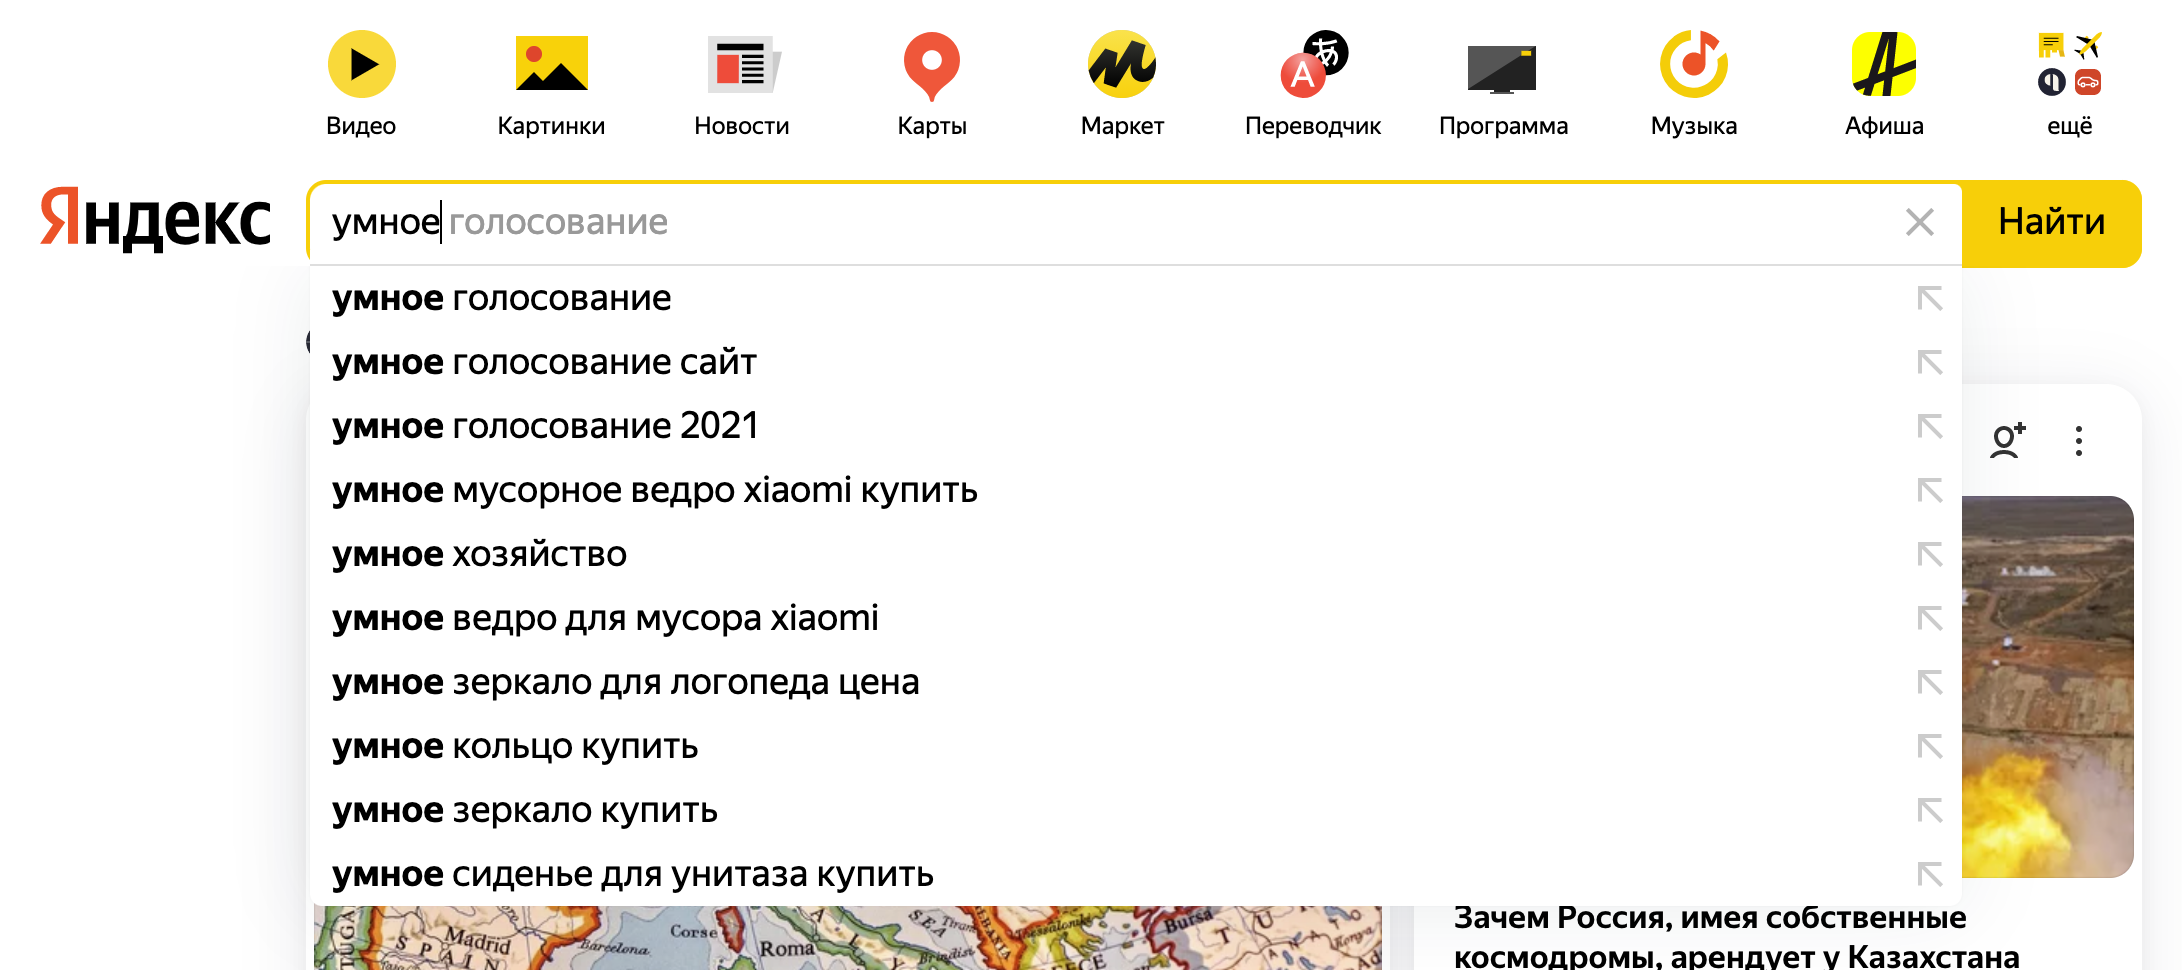 Поисковая подсказка на главной странице Яндекса